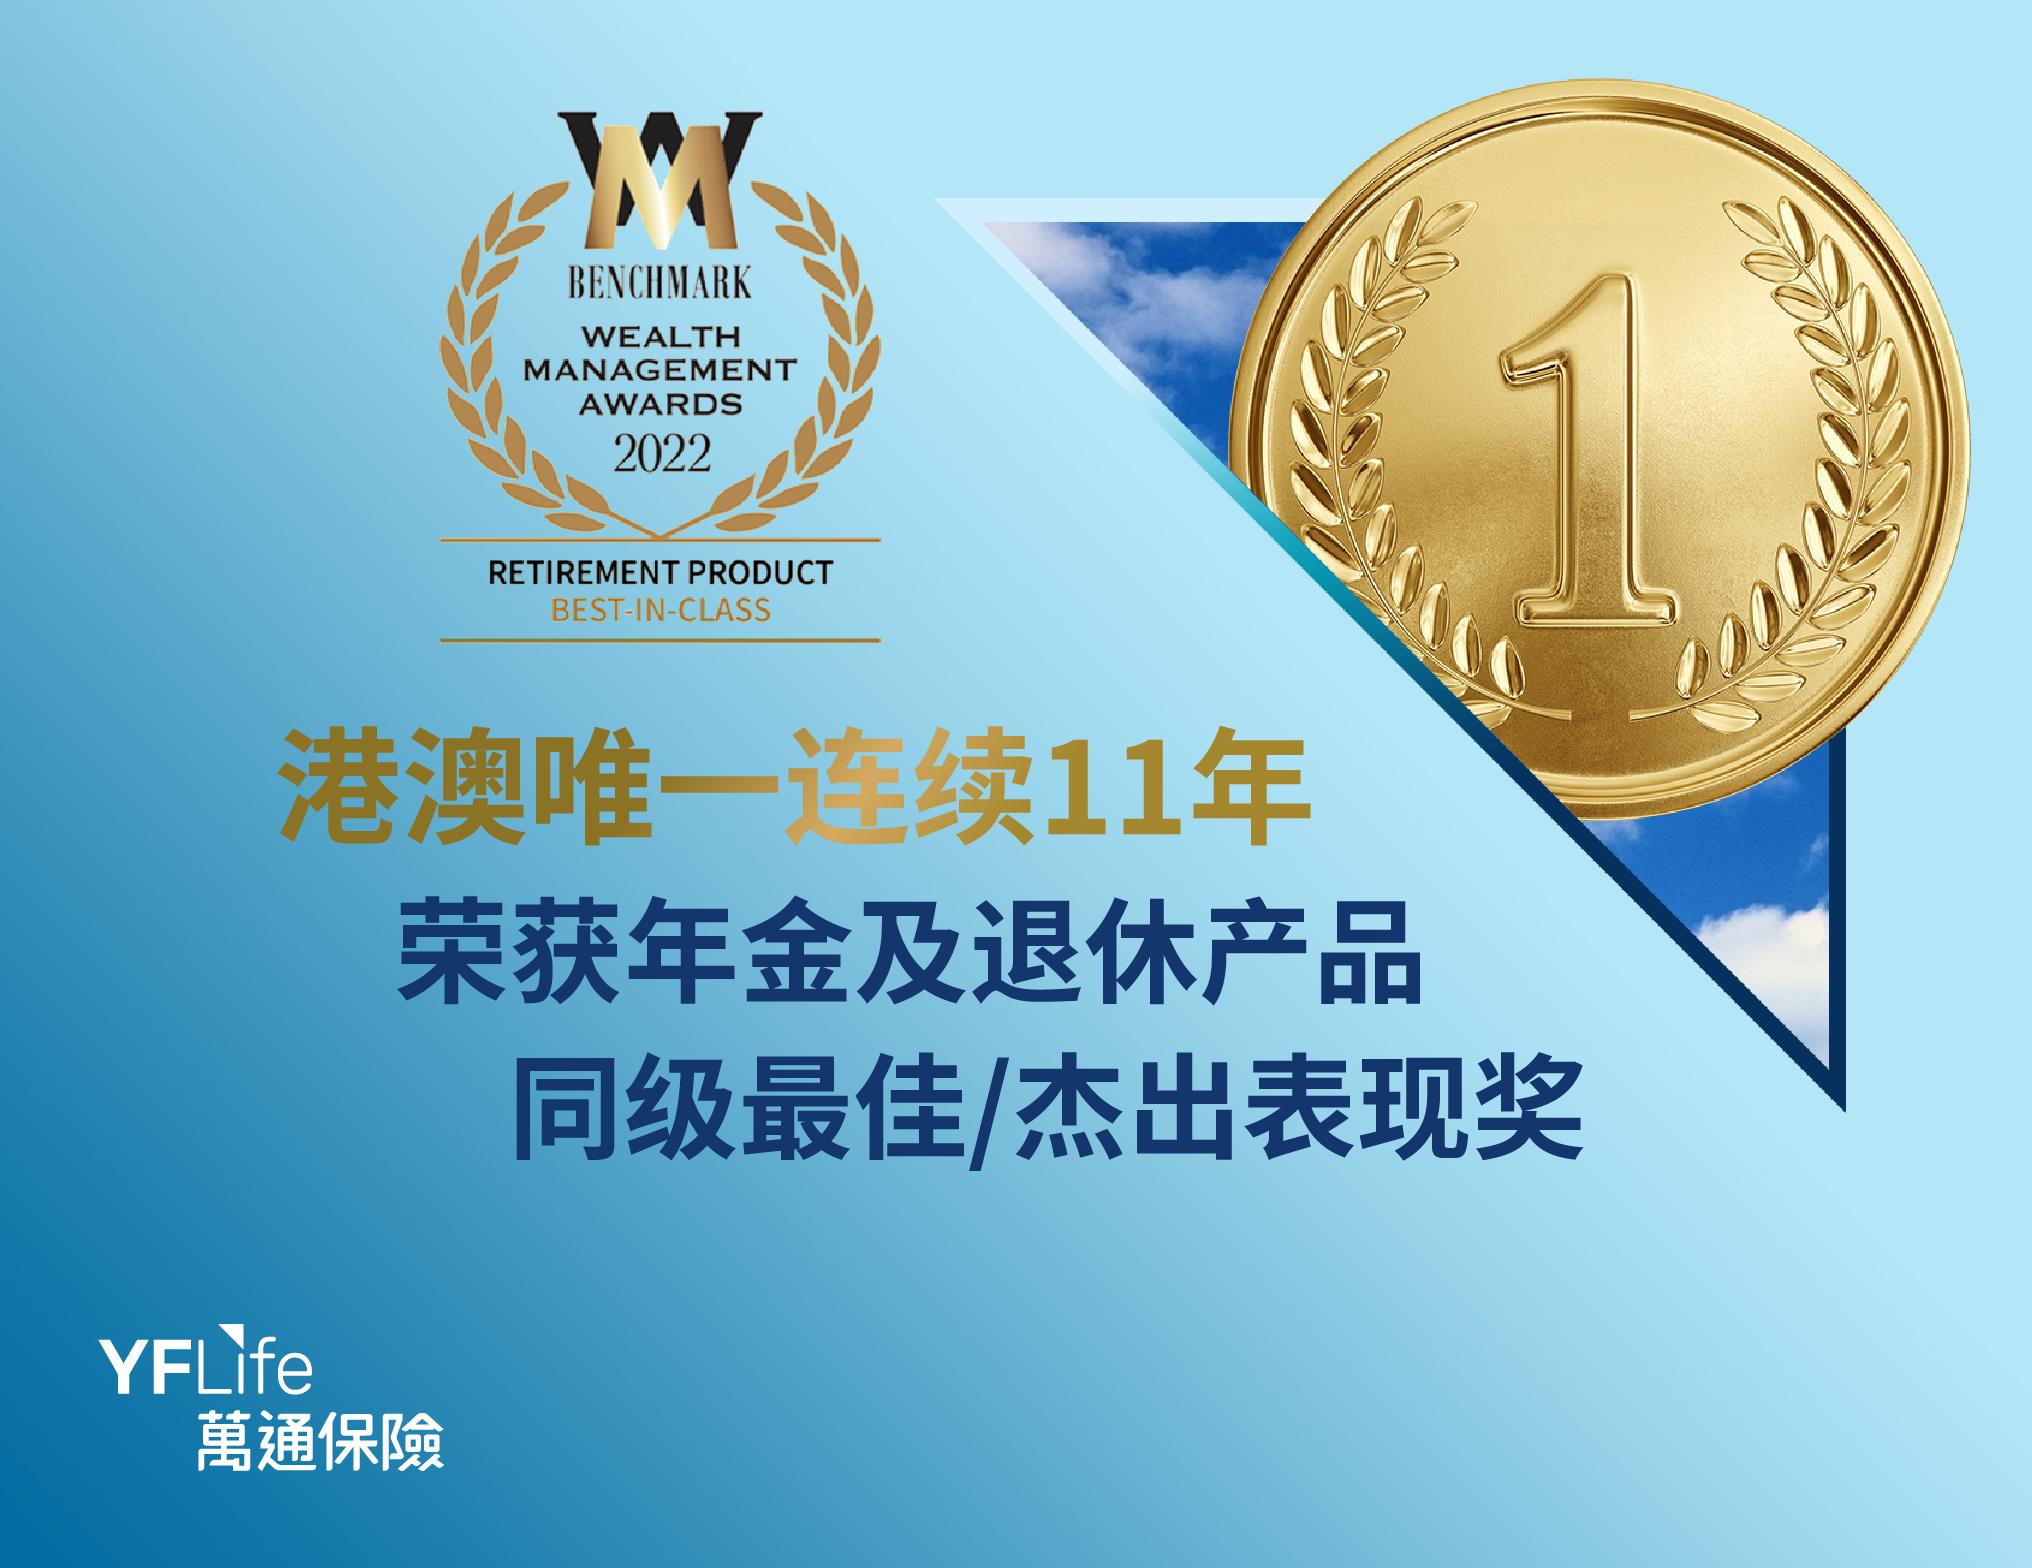 万通保险连续11年荣获《指标》＂财富管理大奖＂年金／退休产品奖项佳绩。